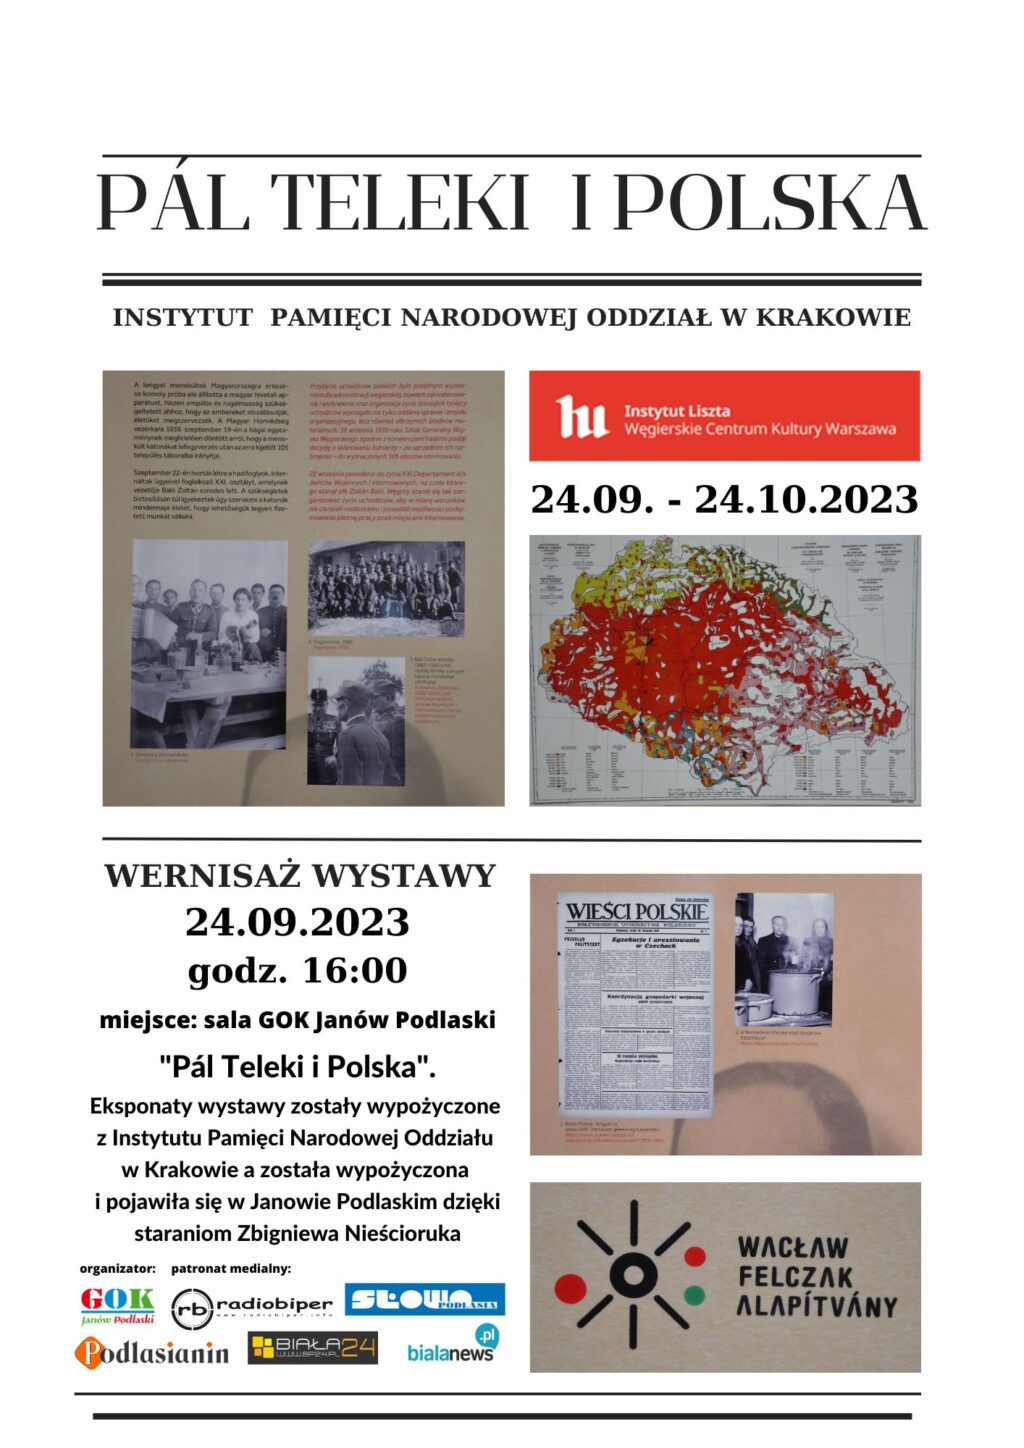 Wernisaż wystawy “Pál Teleki i Polska”